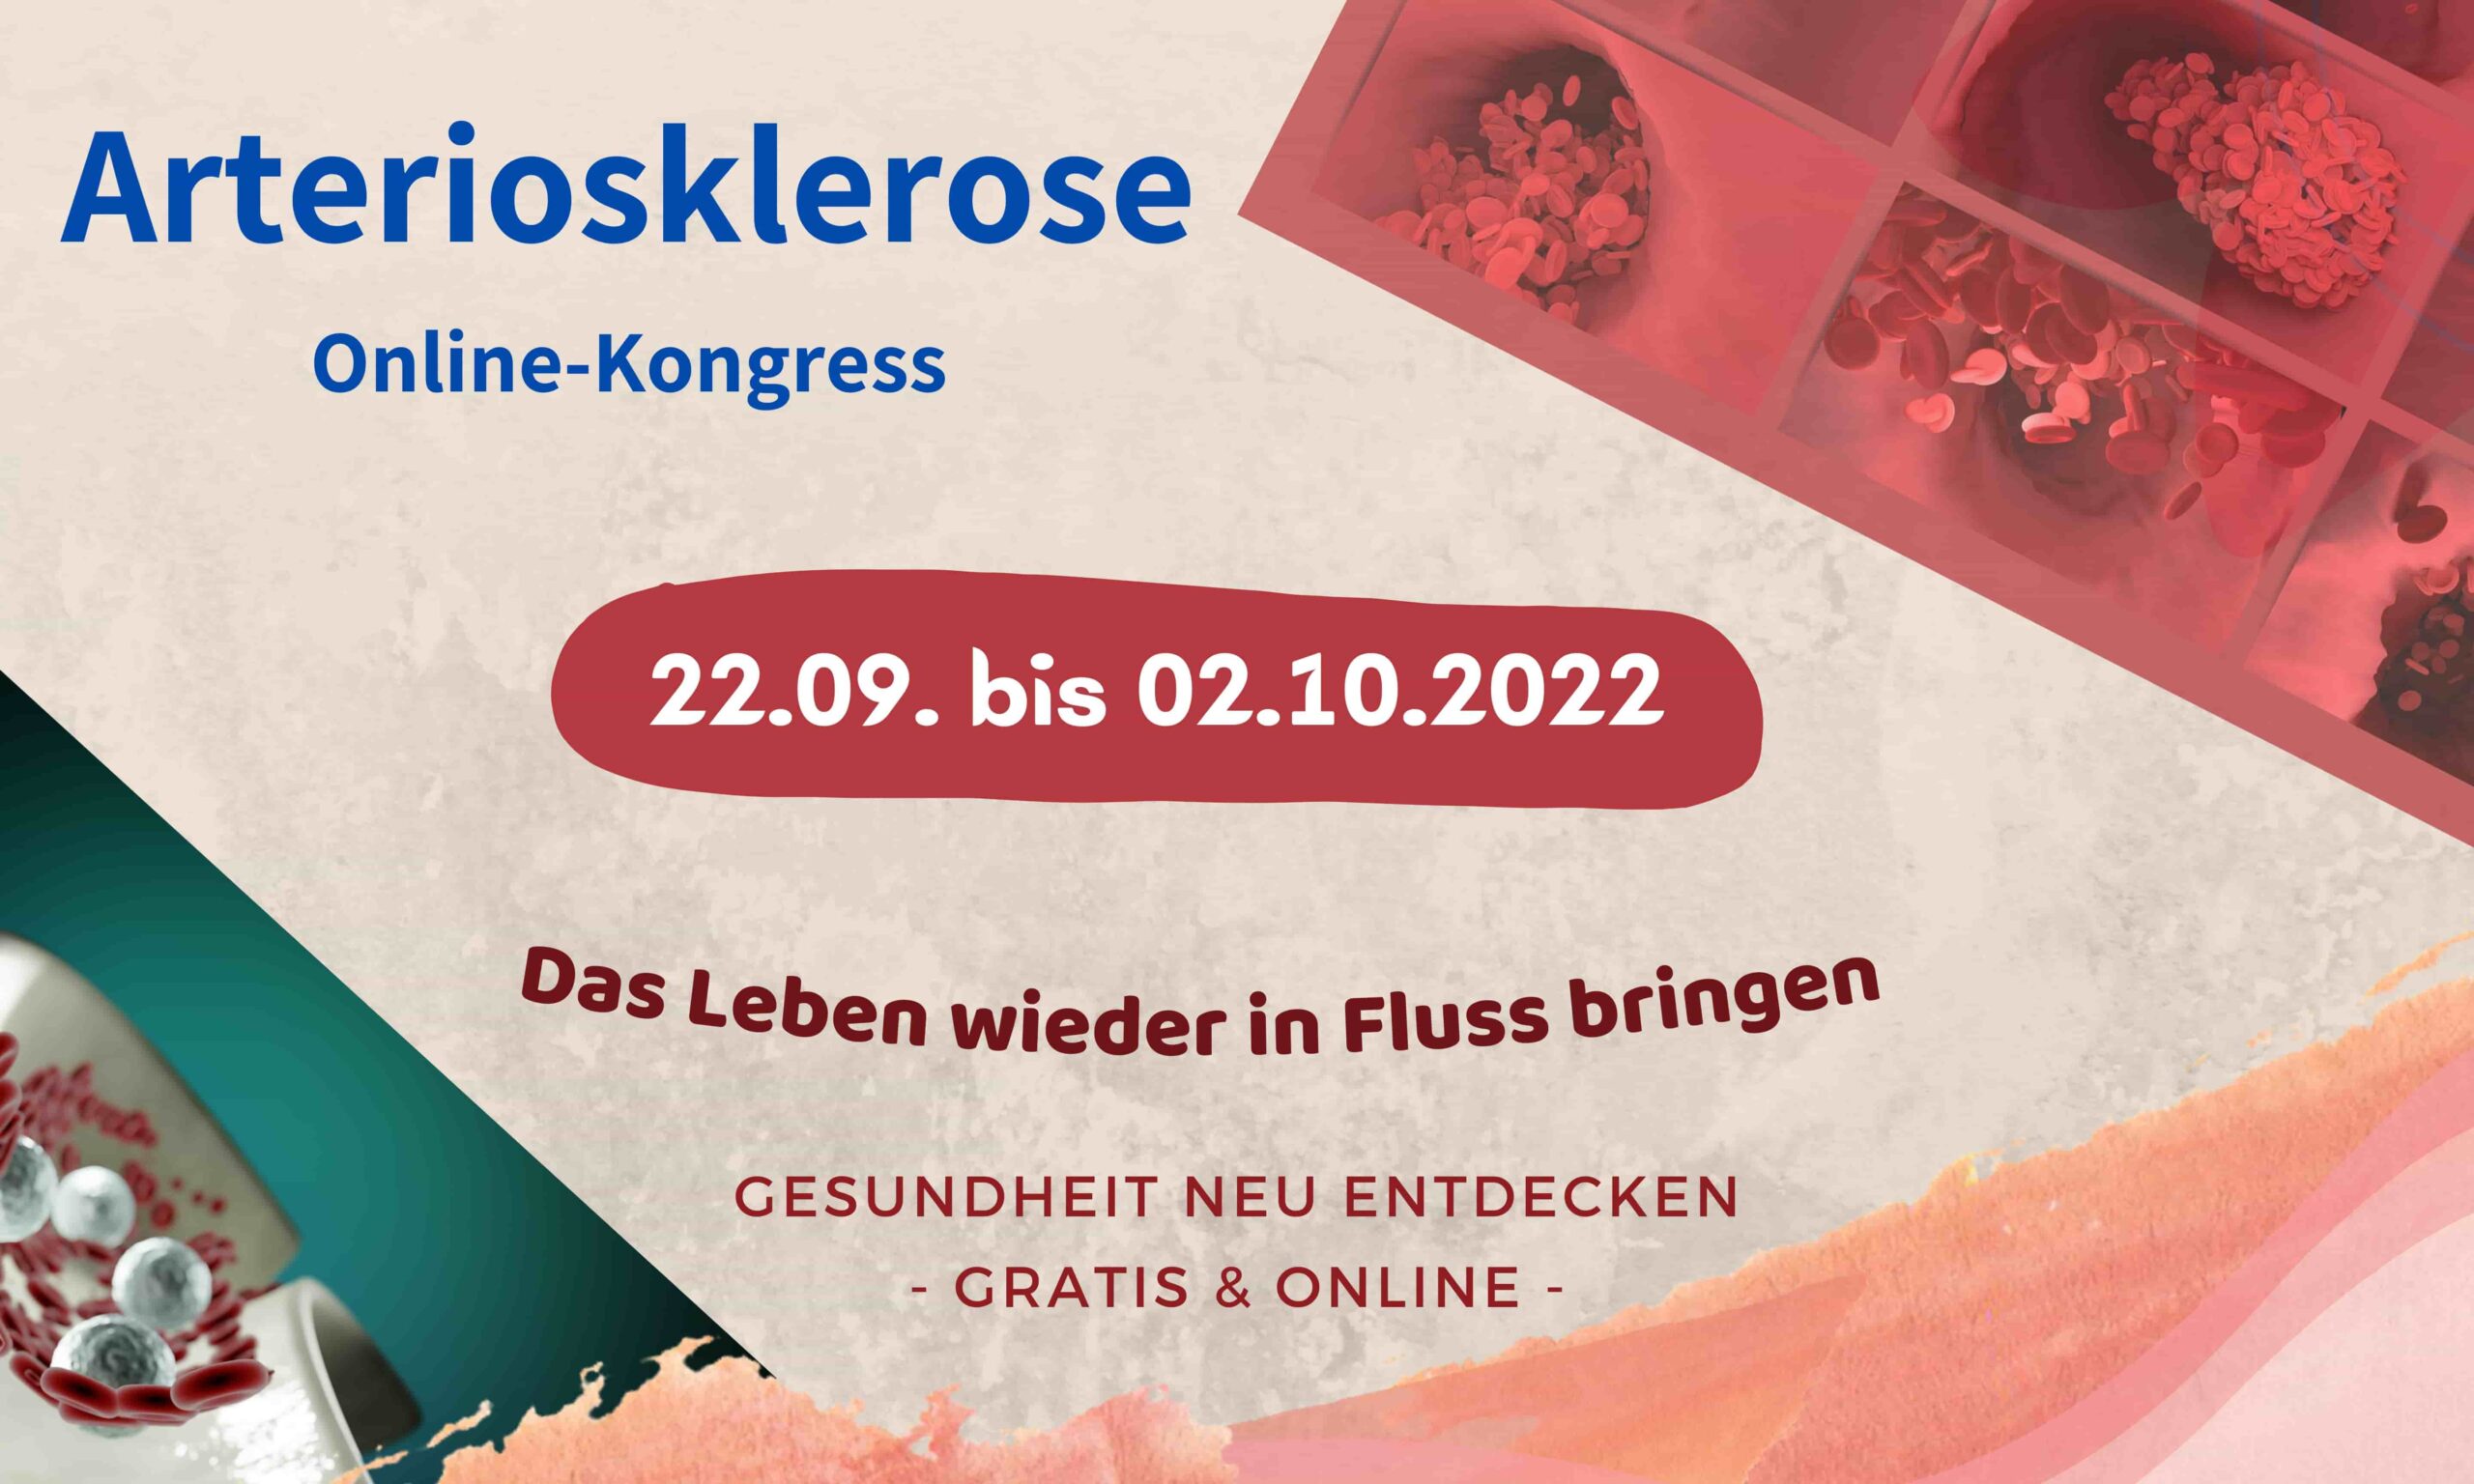 Arteriosklerose-Kongress 2022